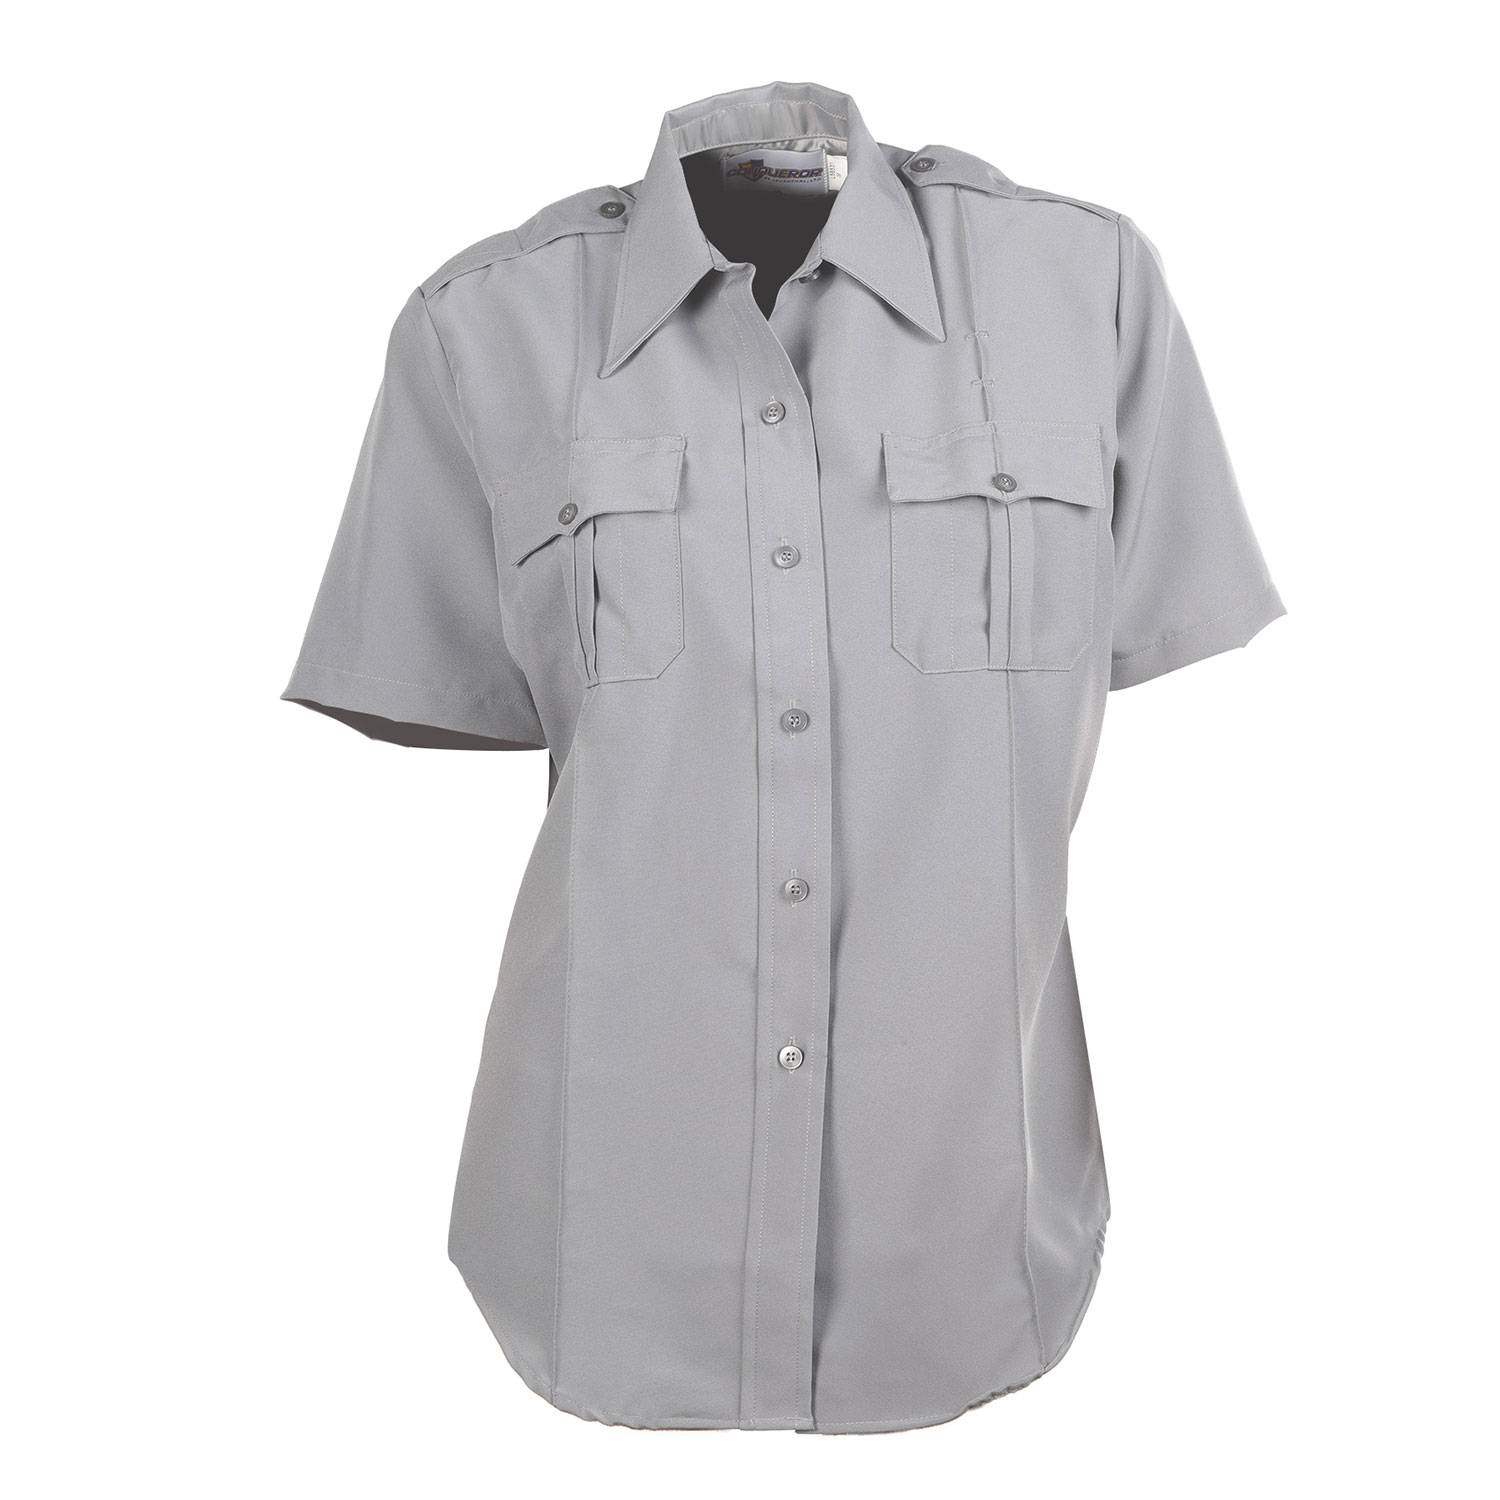 Leventhal Women's Class A Zippered Uniform Shirt